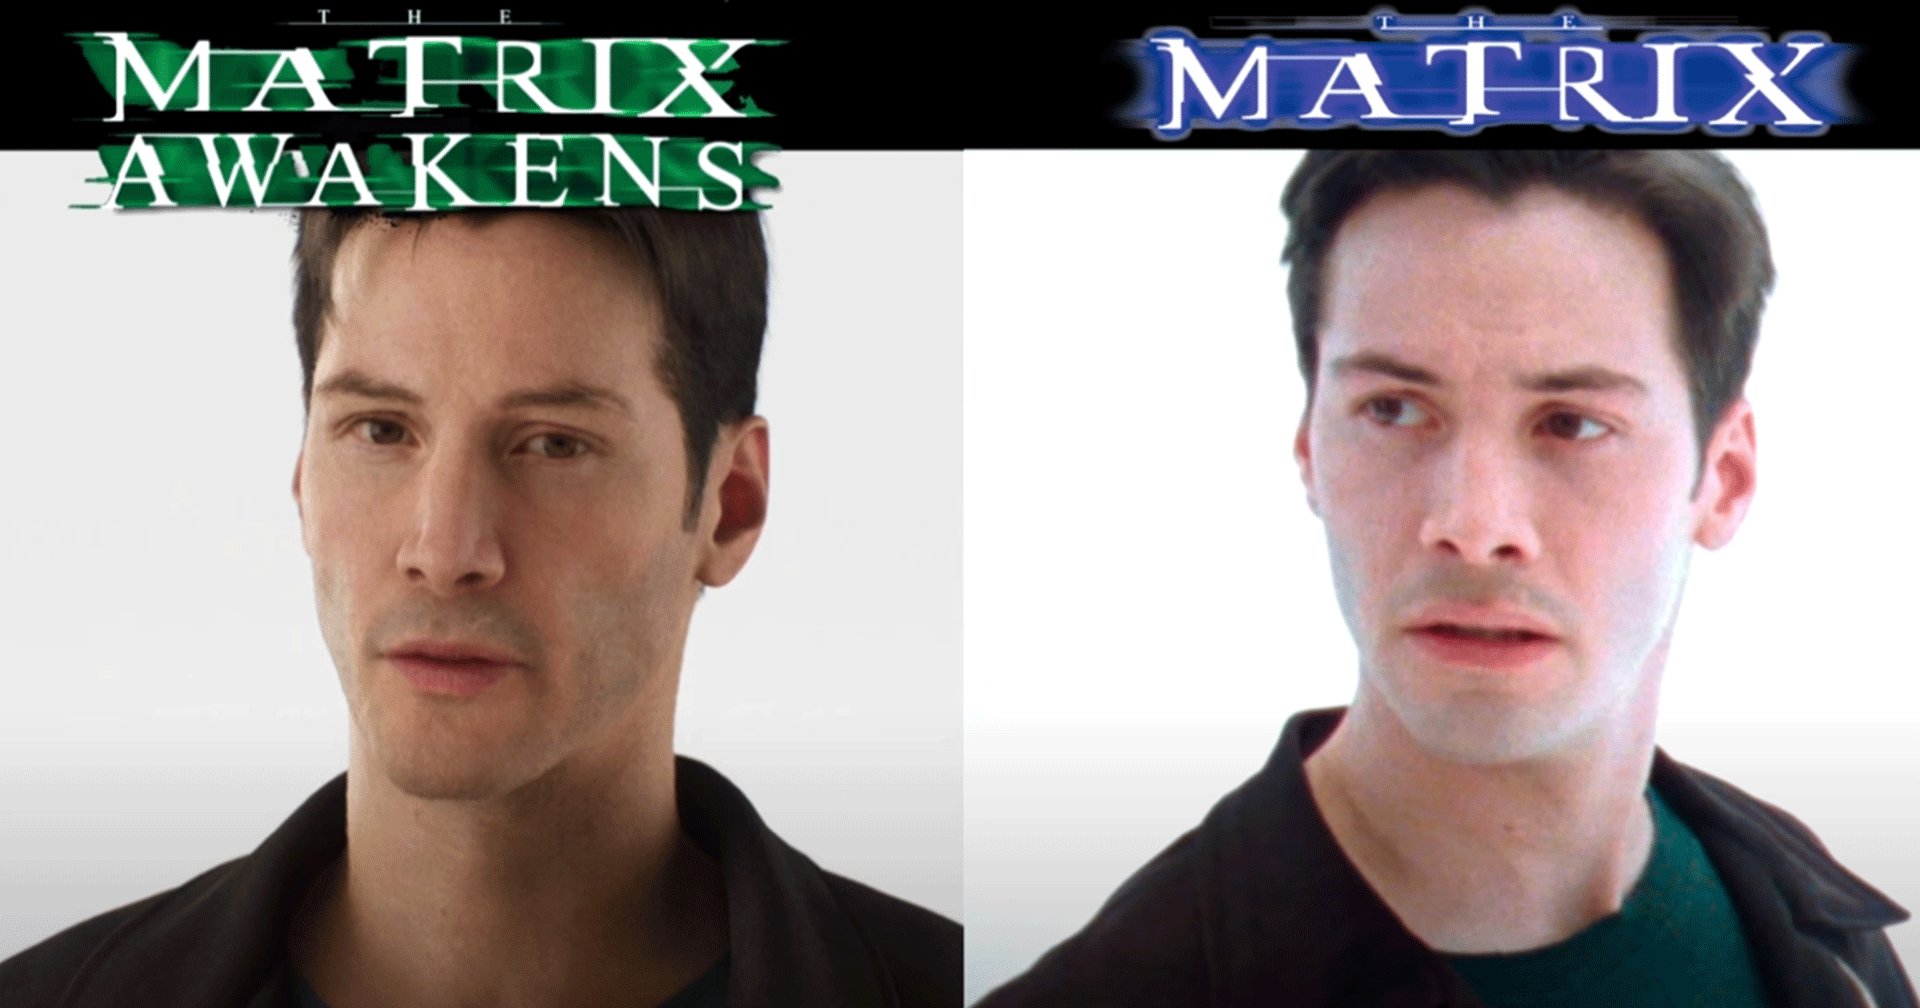 The Matrix vs The Matrix Awaken